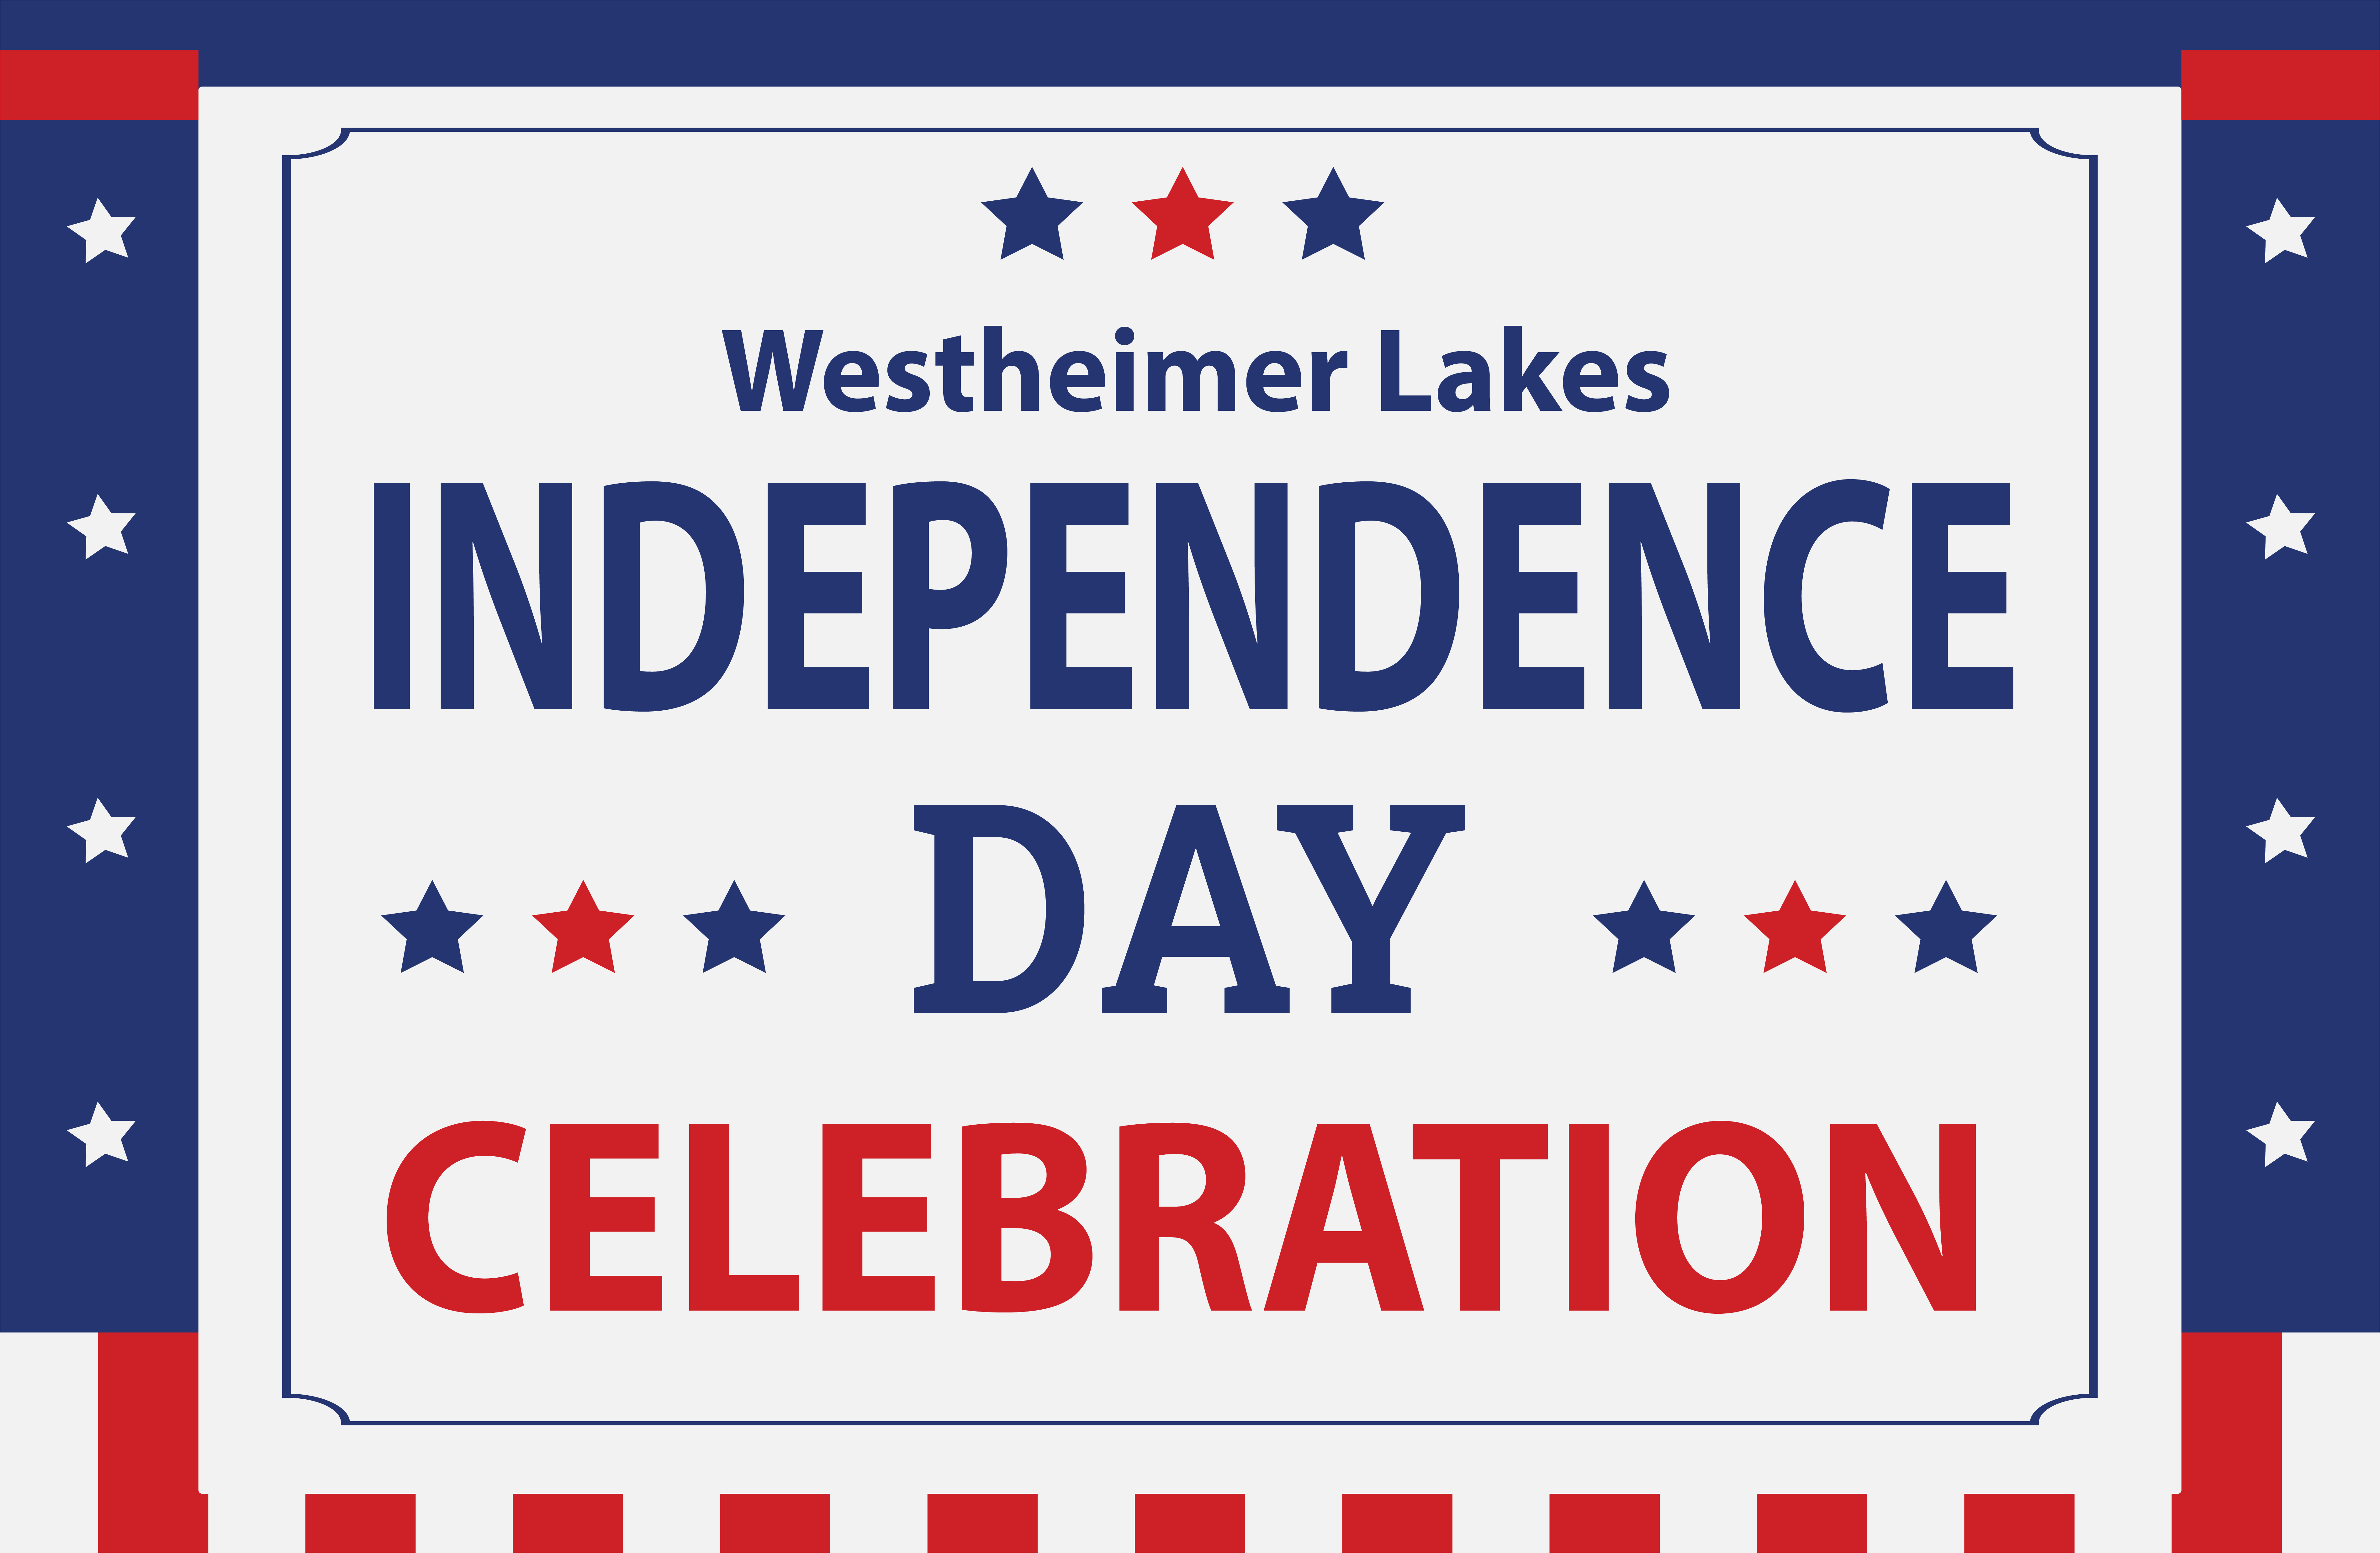 Westheimer Lakes Independence Day Celebration image